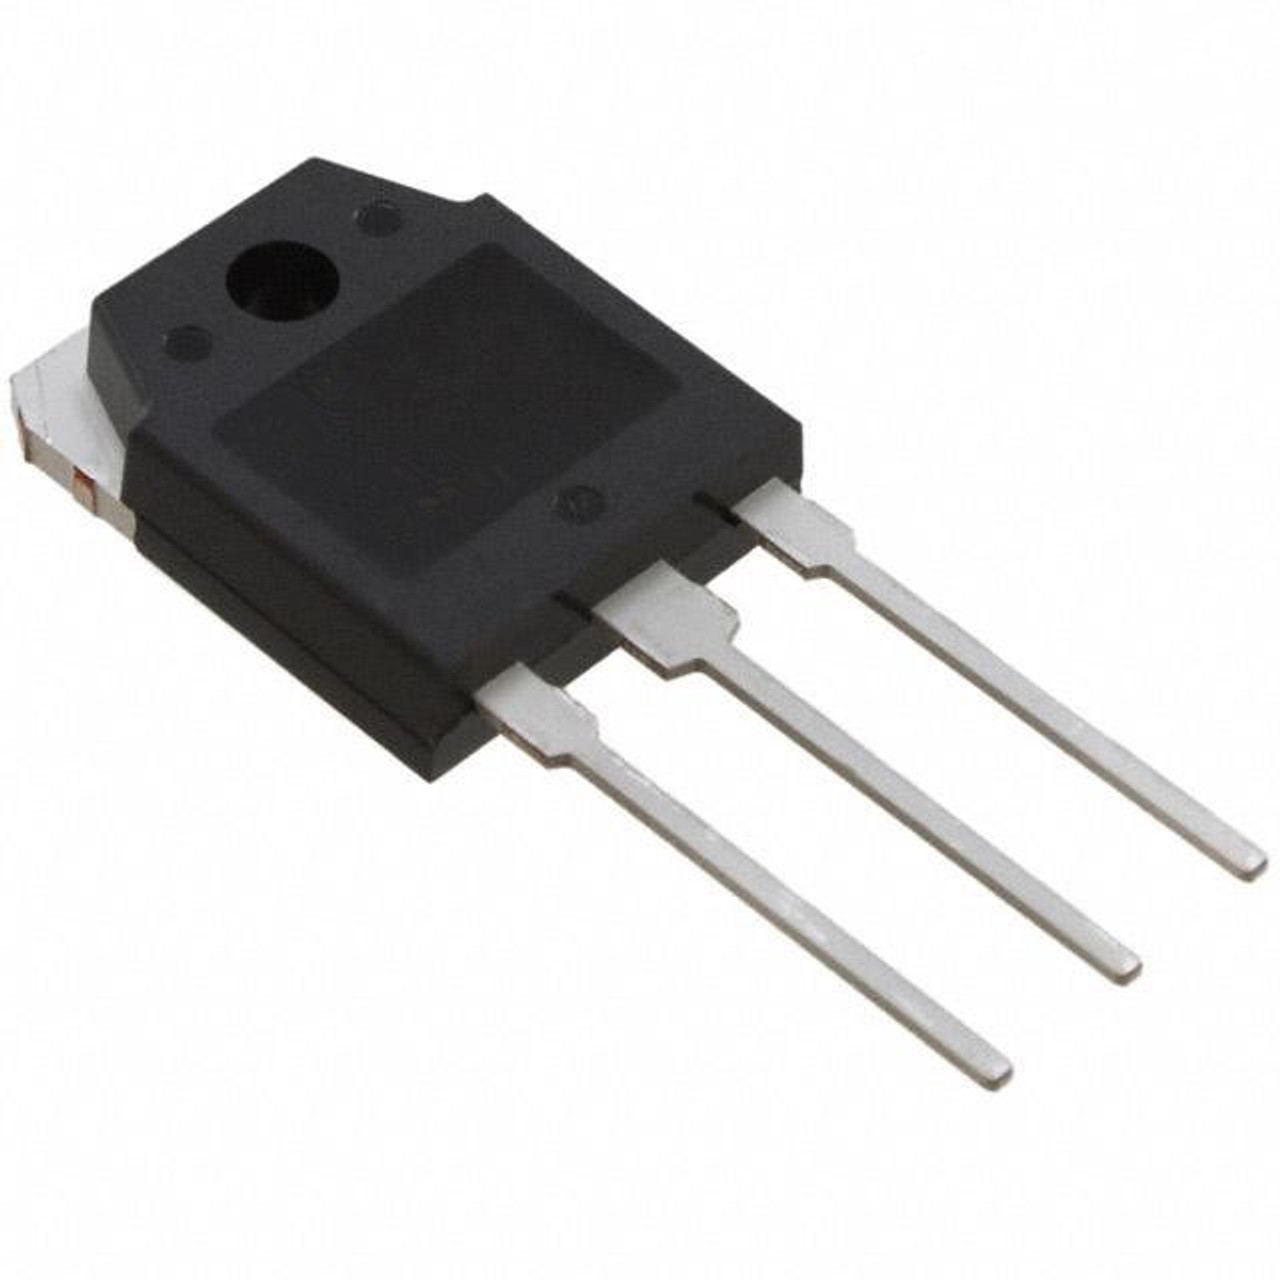 IXTQ22N50P ; Transistor N-MOSFET 500V 22A 350W 0.27Ω, TO-3P GDS